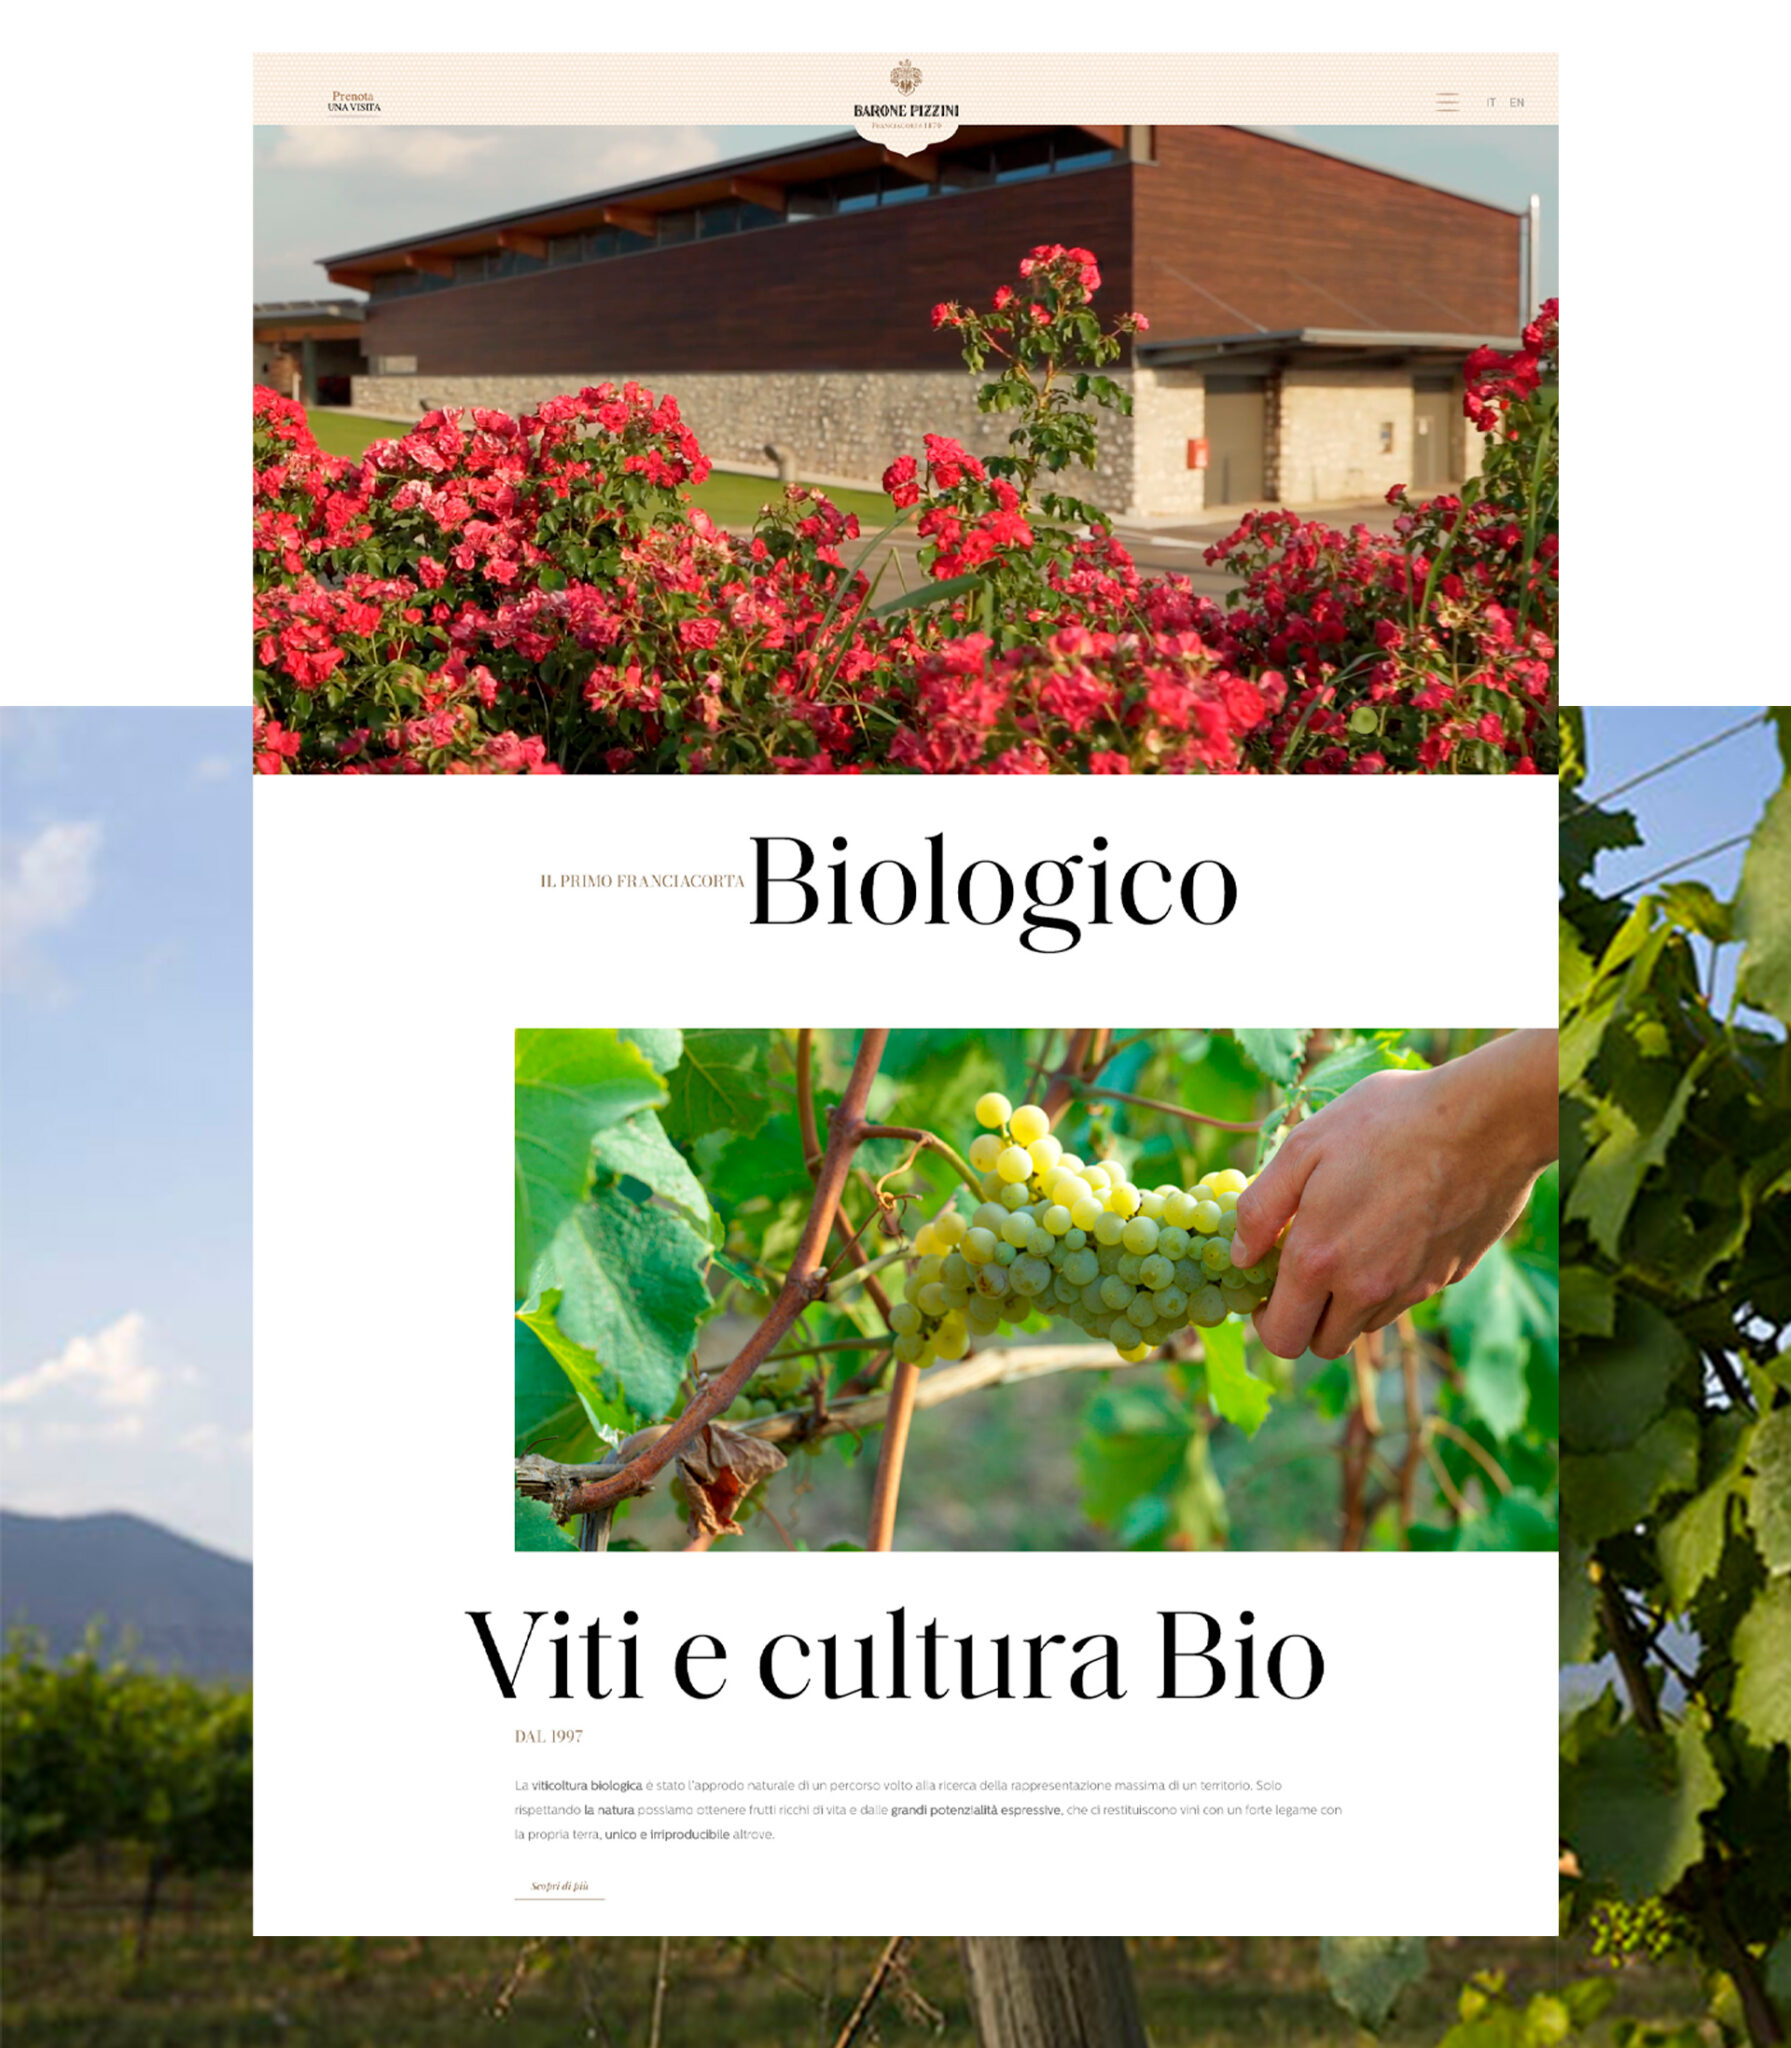 progettazione del sito web della cantina vinicola Barone Pizzini